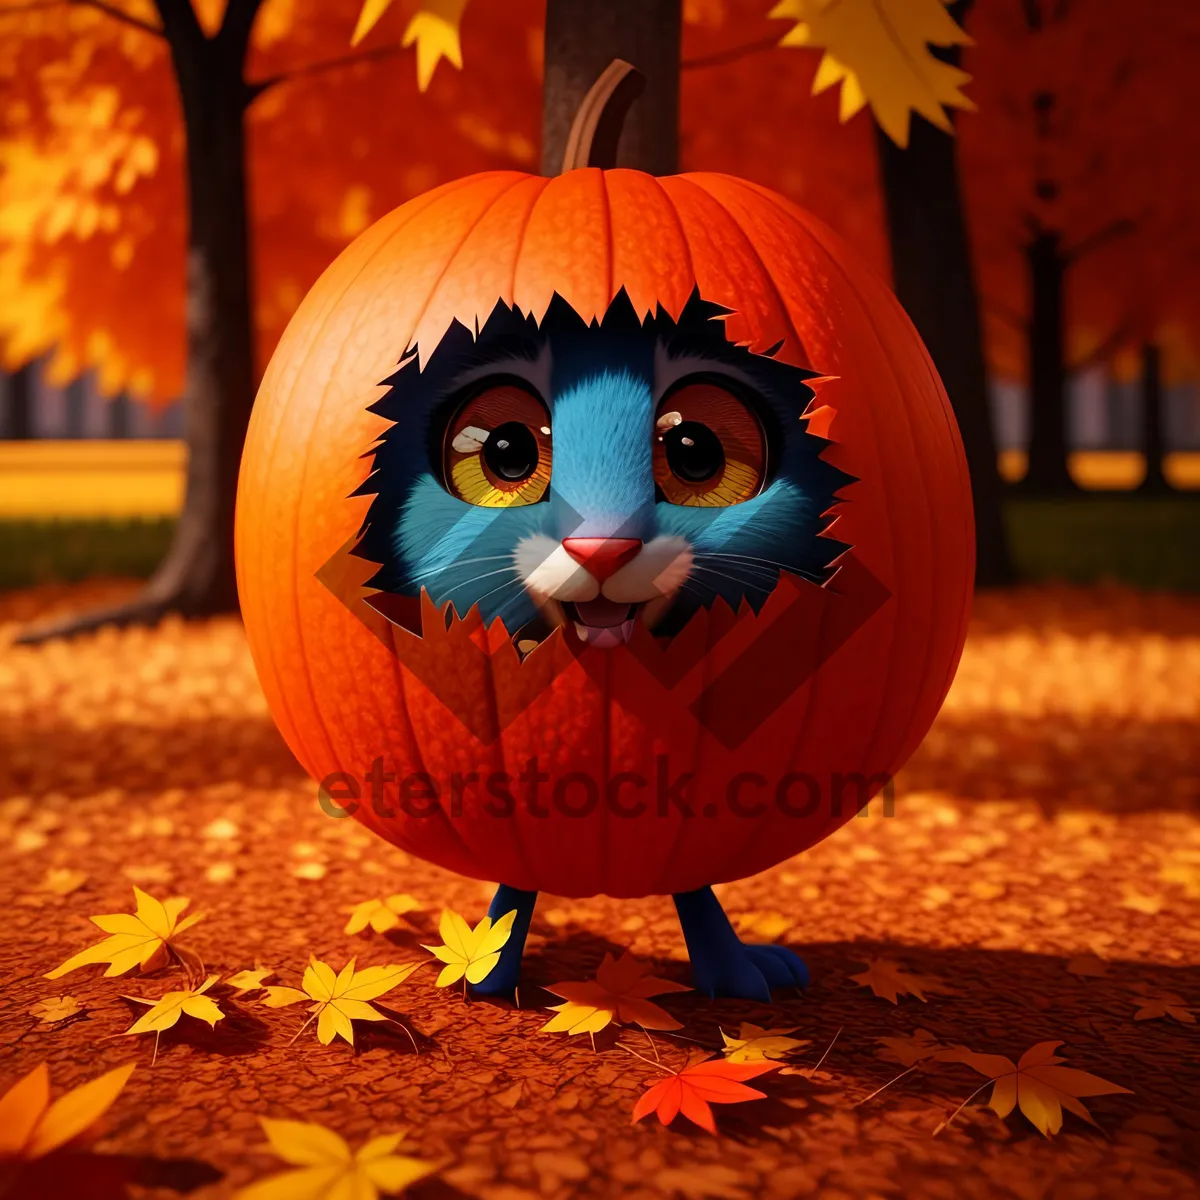 Picture of Spooky Jack-o-Lantern Illuminates Autumn Night